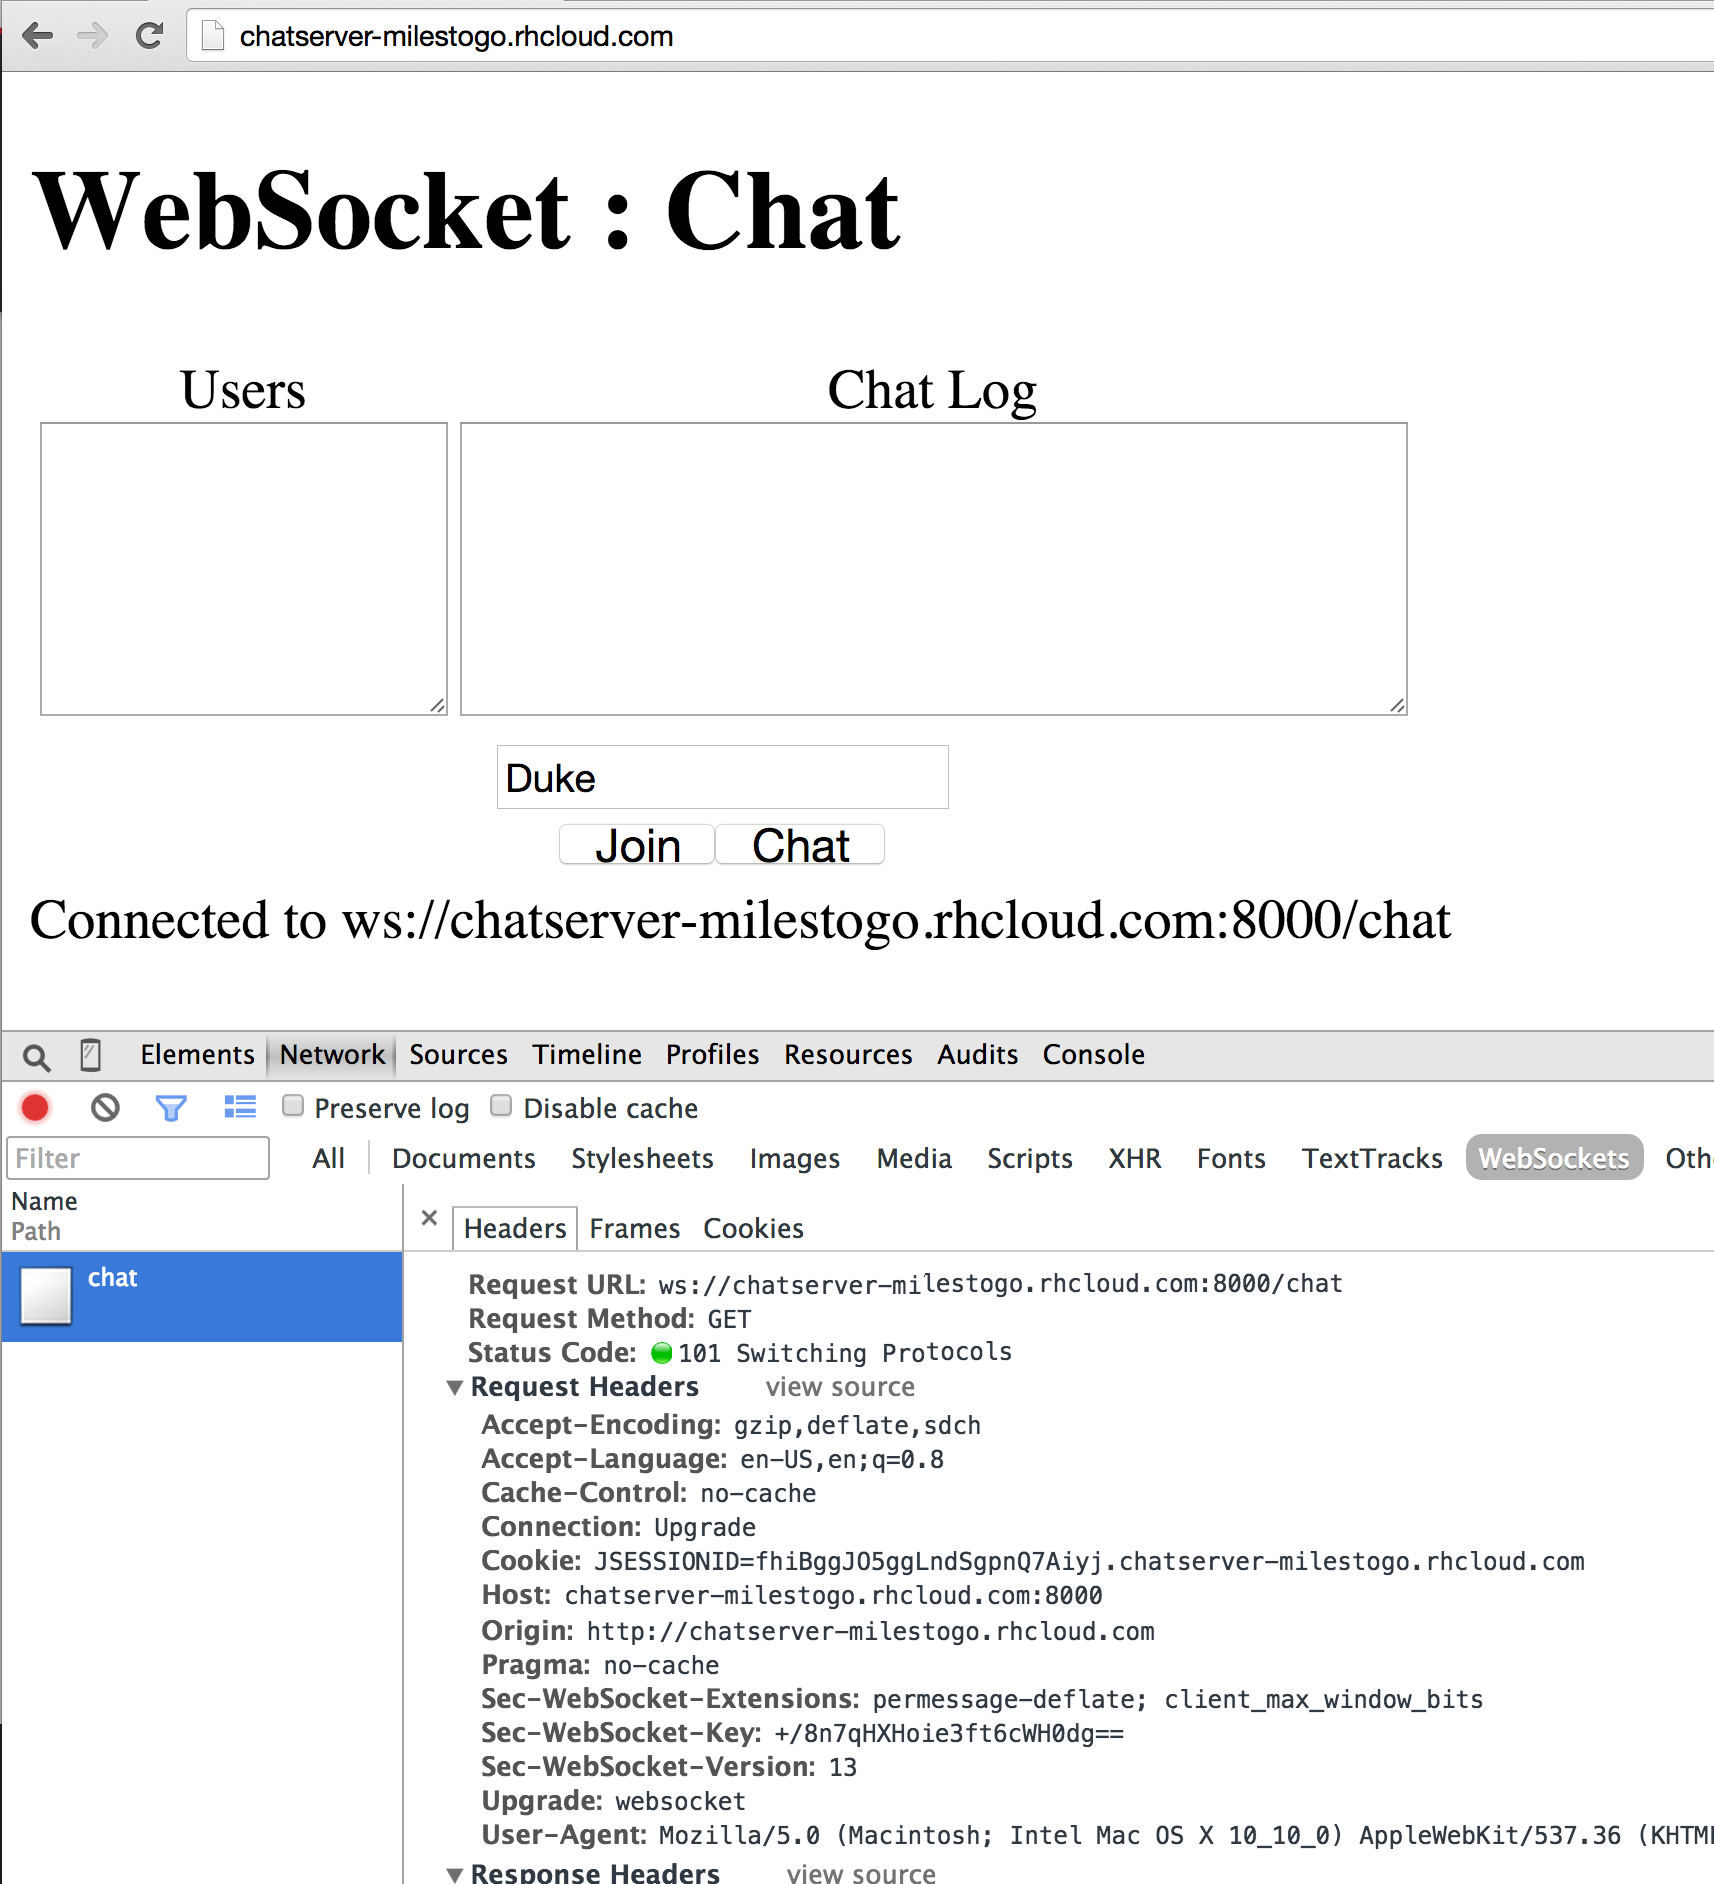 techtip51-websocket-chat-output